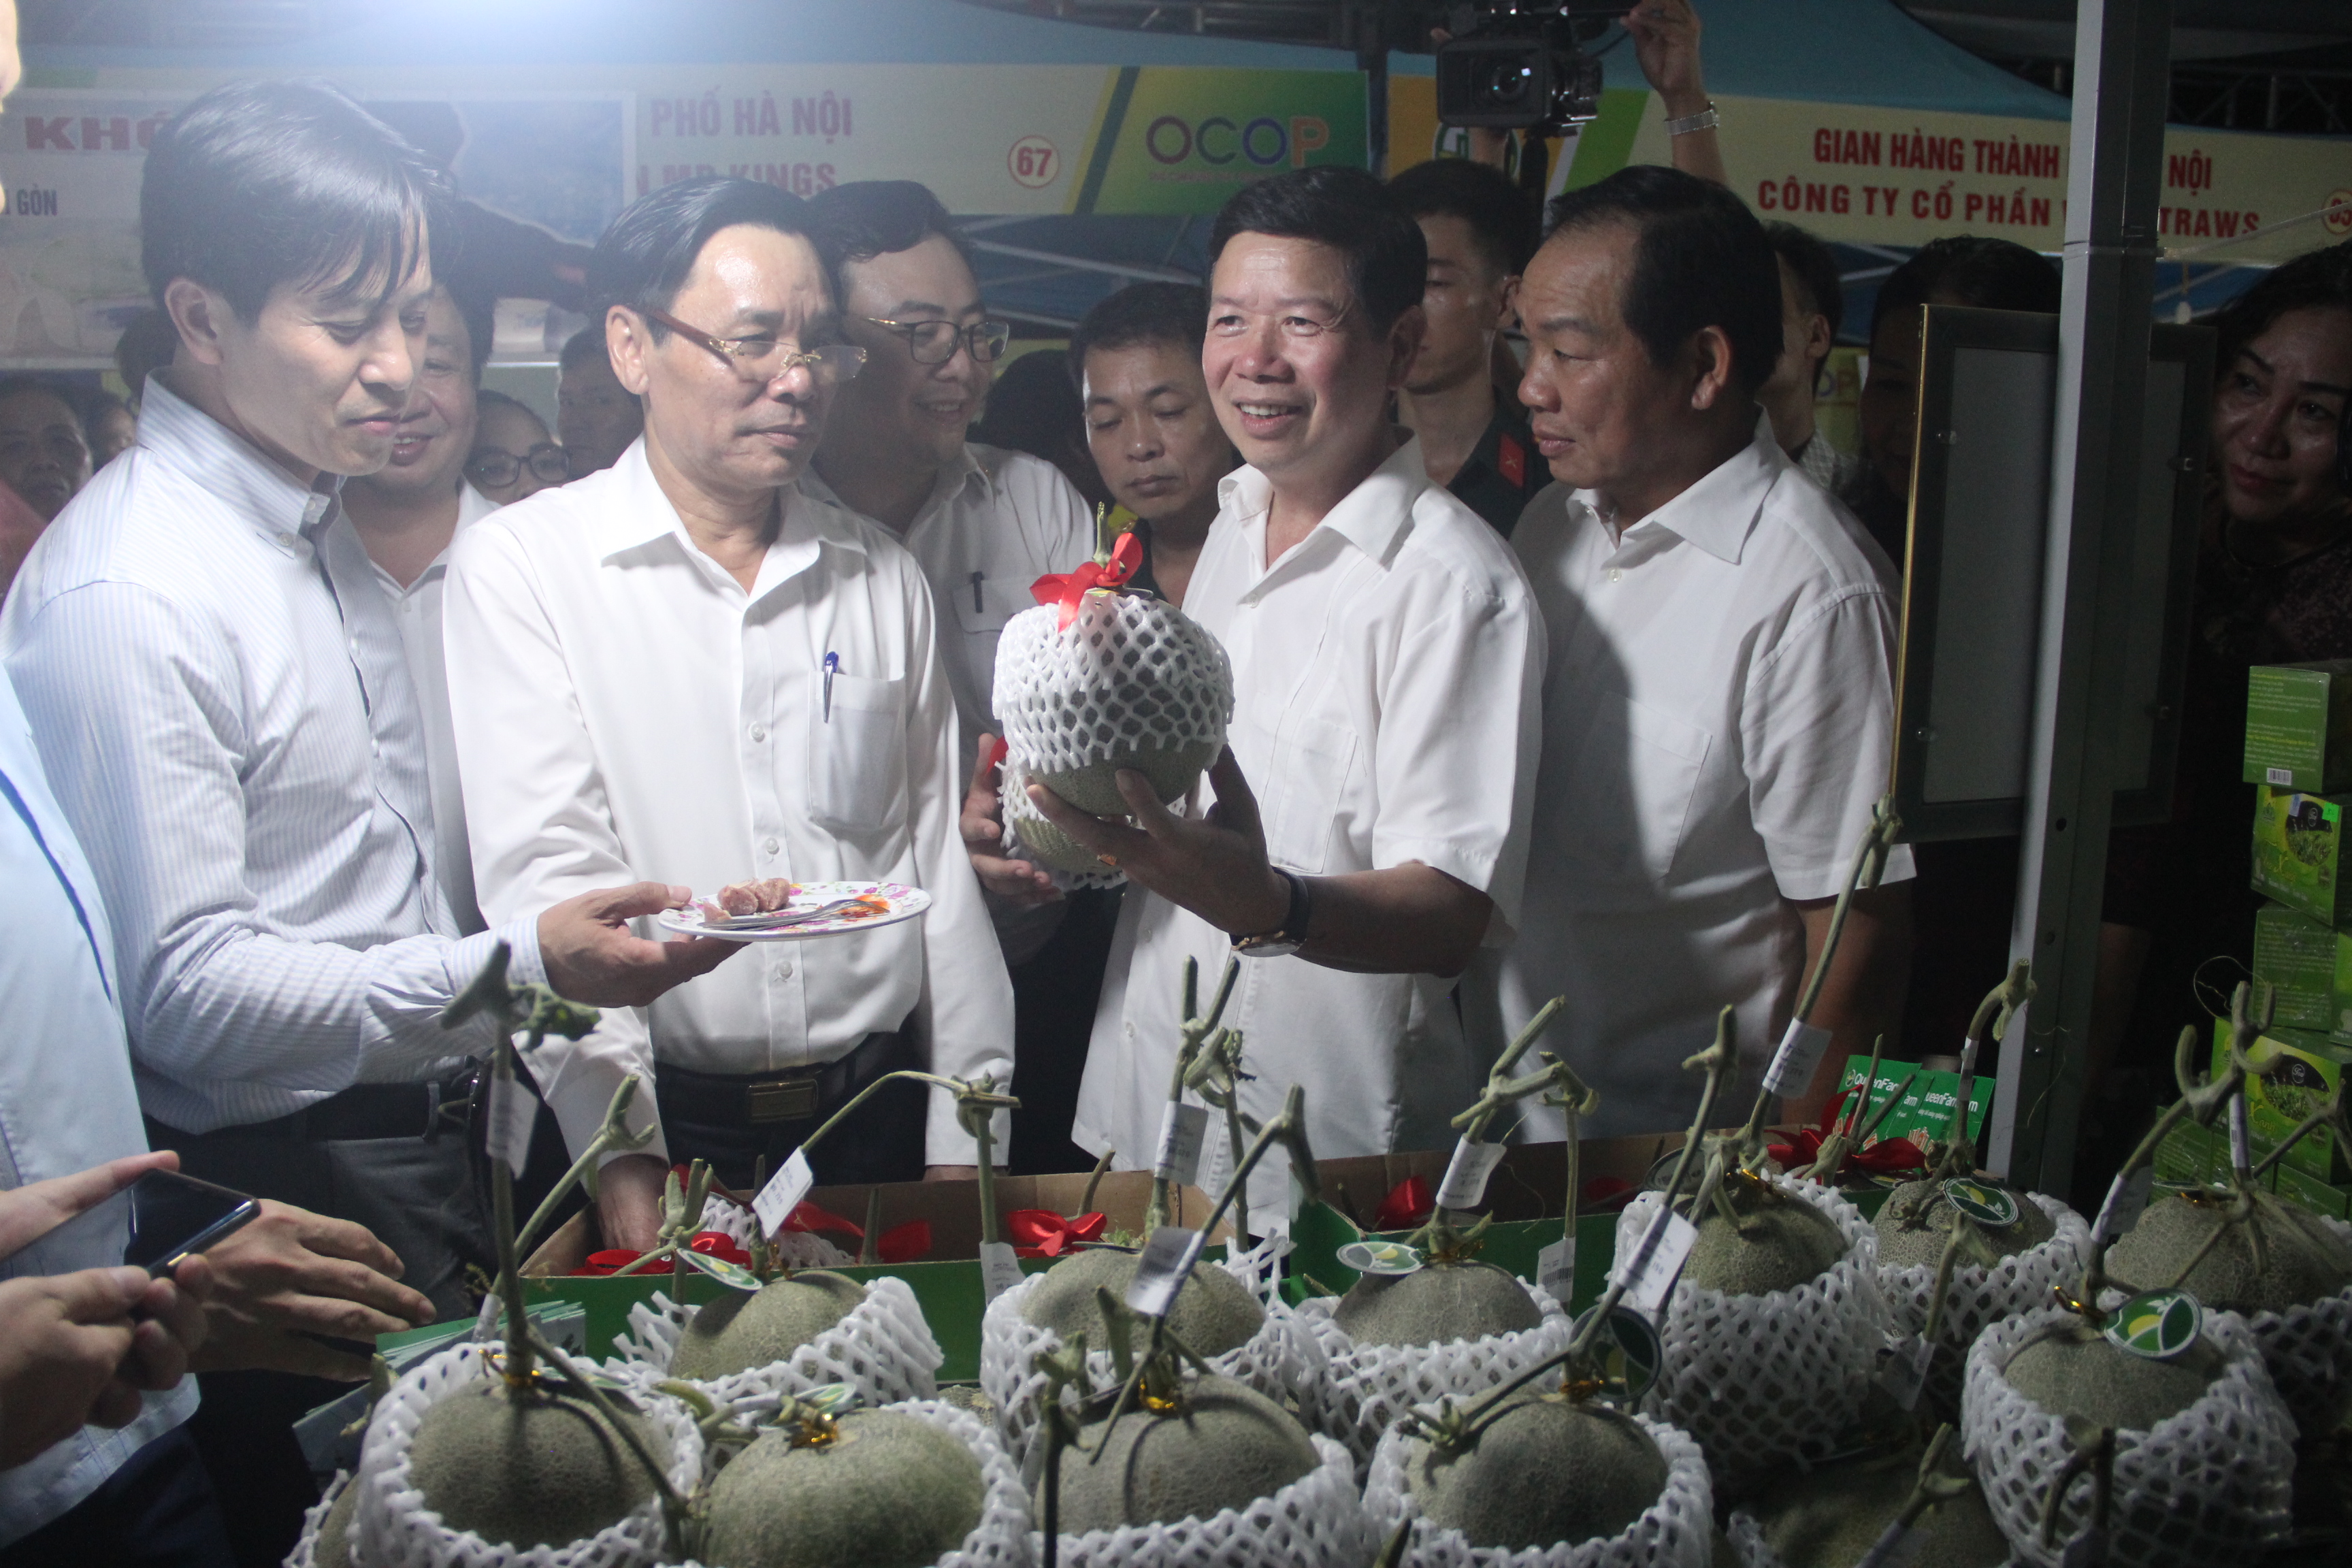 Thanh Hóa trưng bày 4 gian hàng sản phẩm OCOP tại Hà Nội